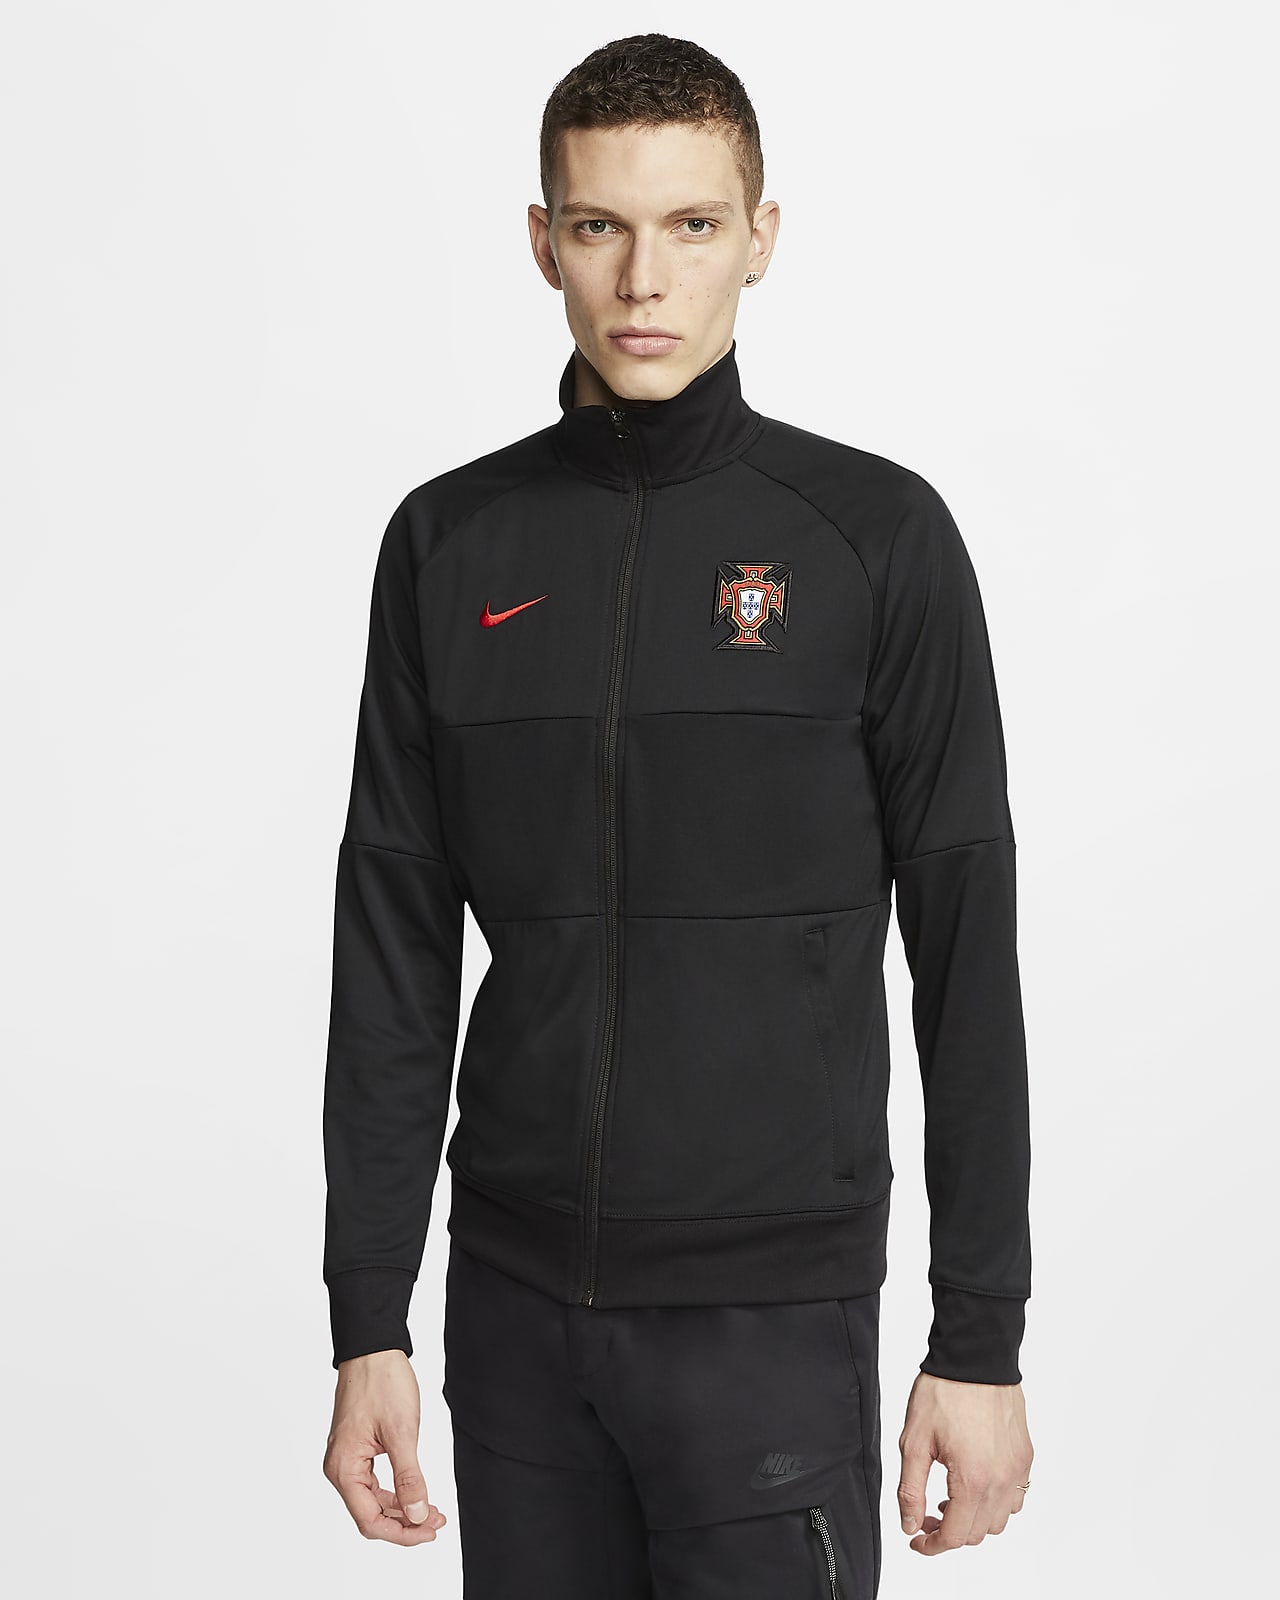 Portugal Men's Football Jacket. Nike SA